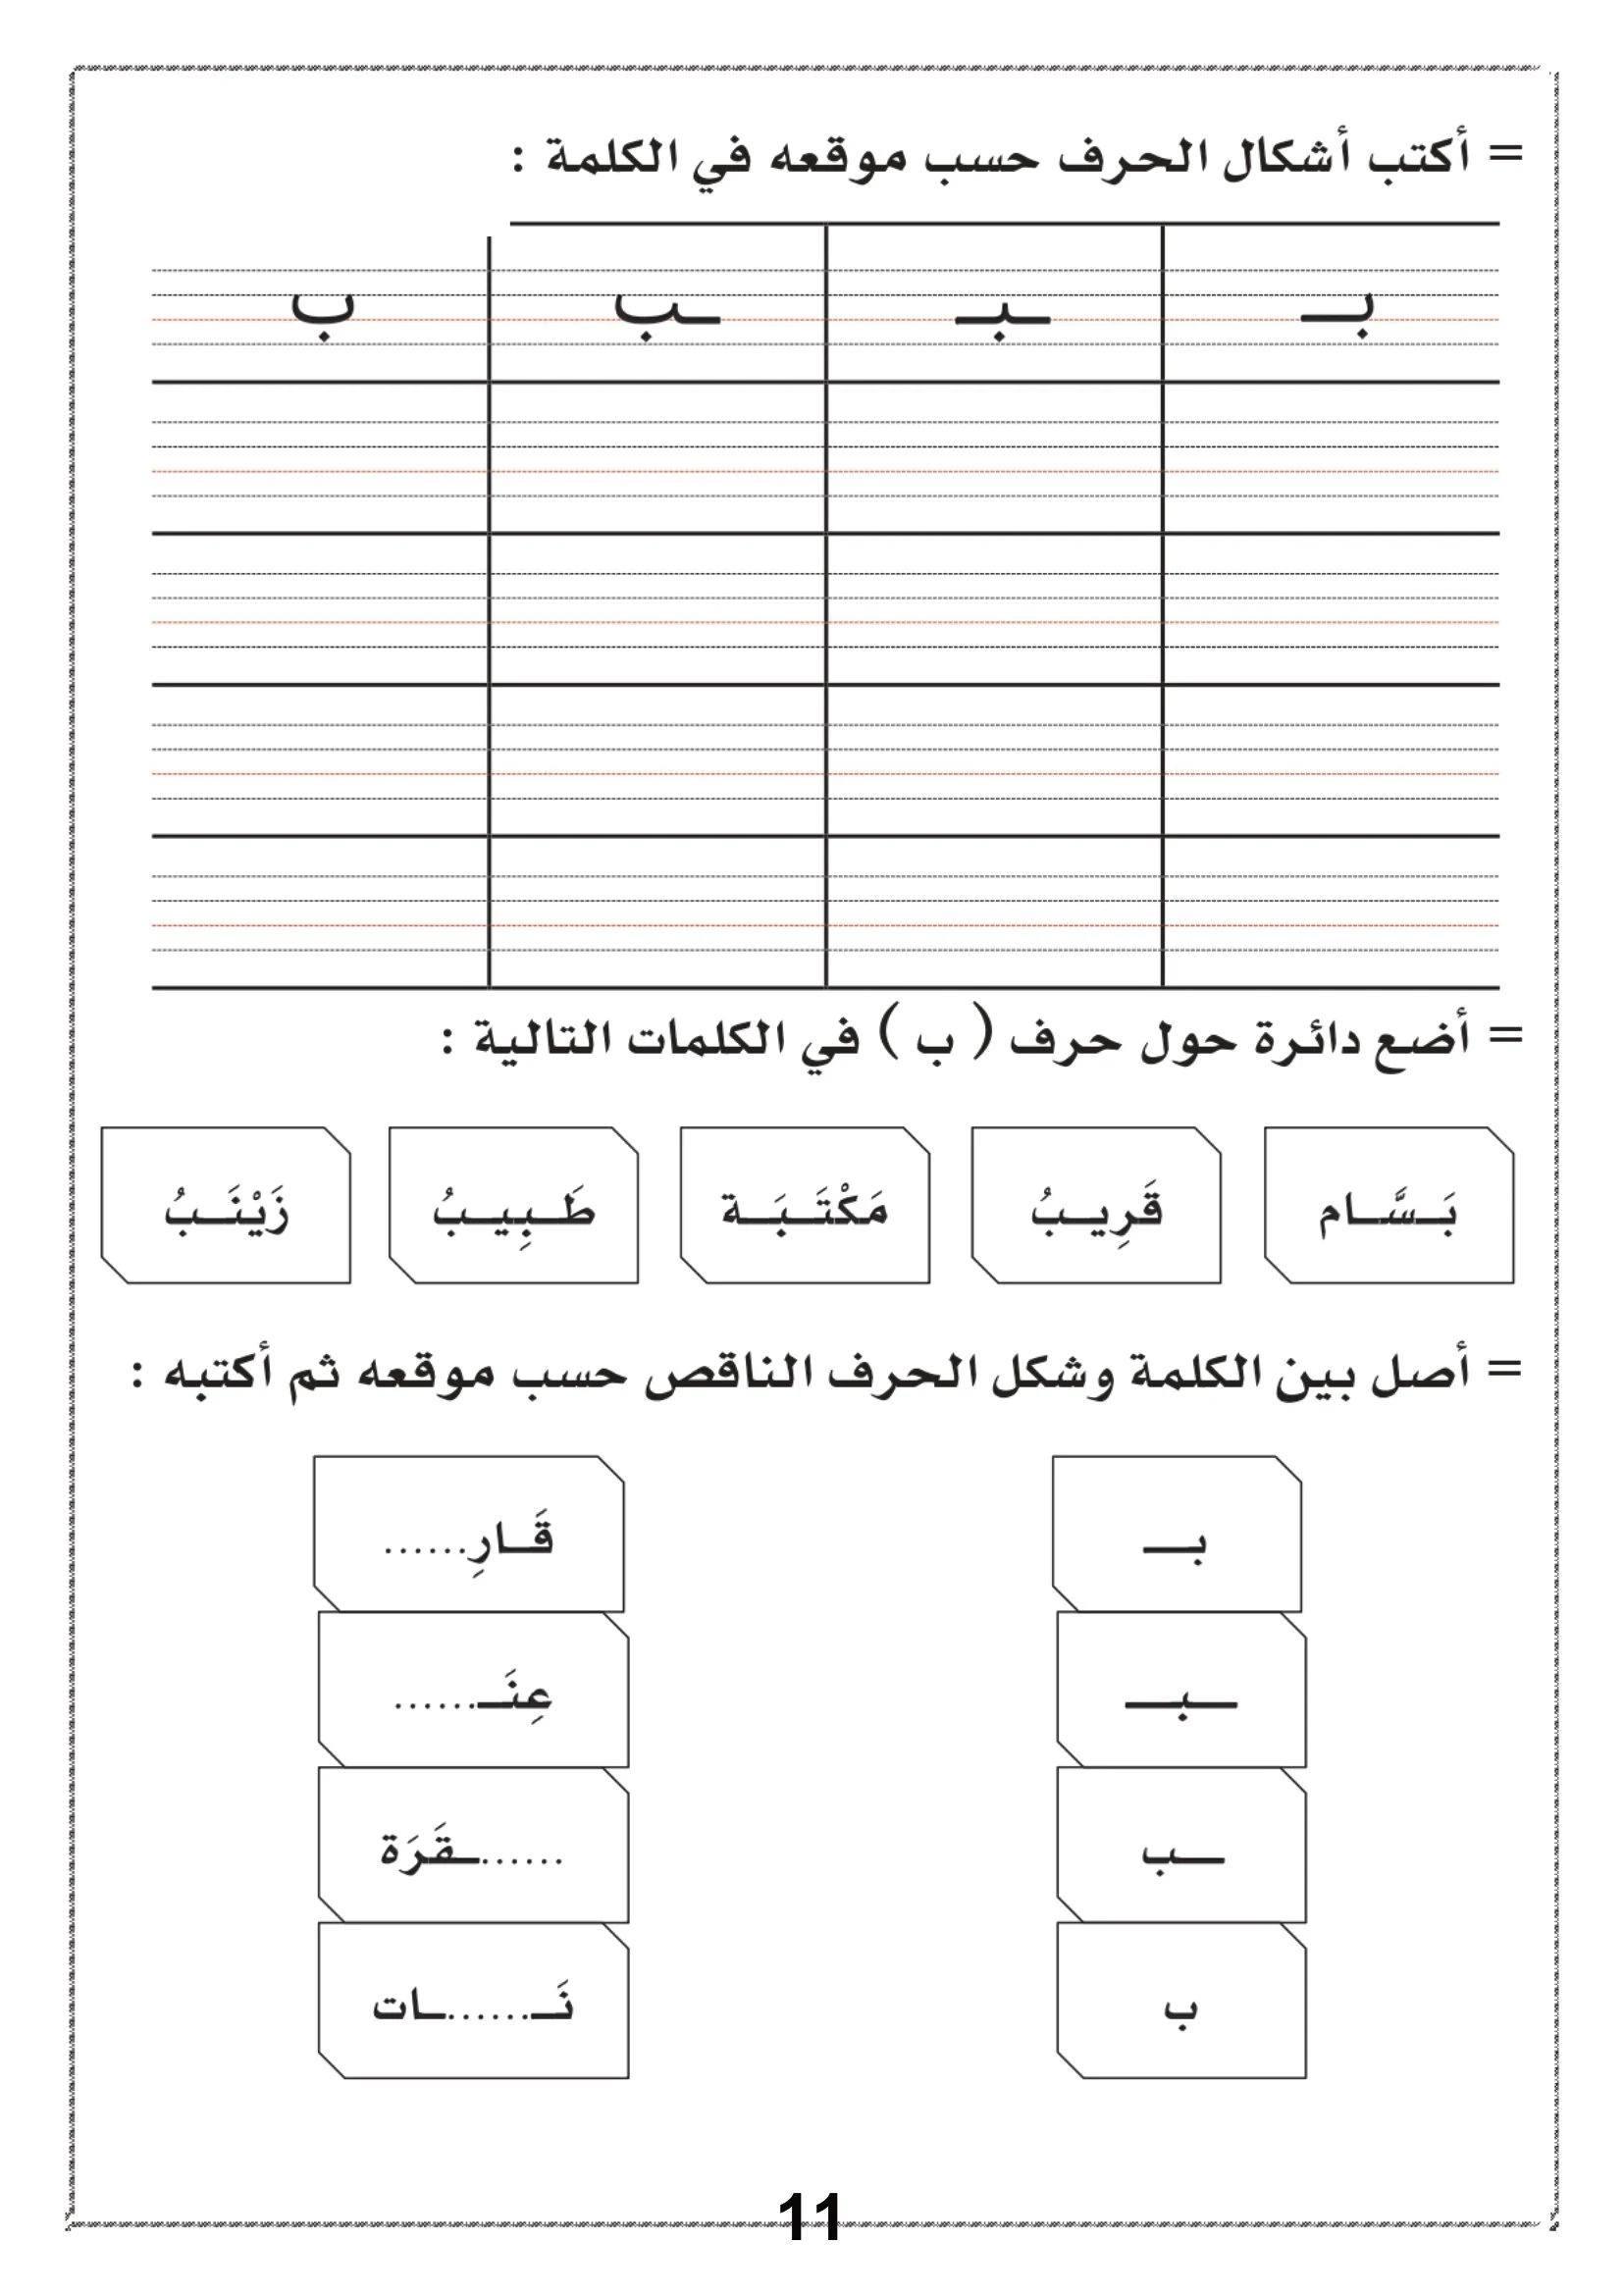 كراسة حديقة الحروف في مادة لغتي للصف الأول الابتدائي pdf تحميل مباشر